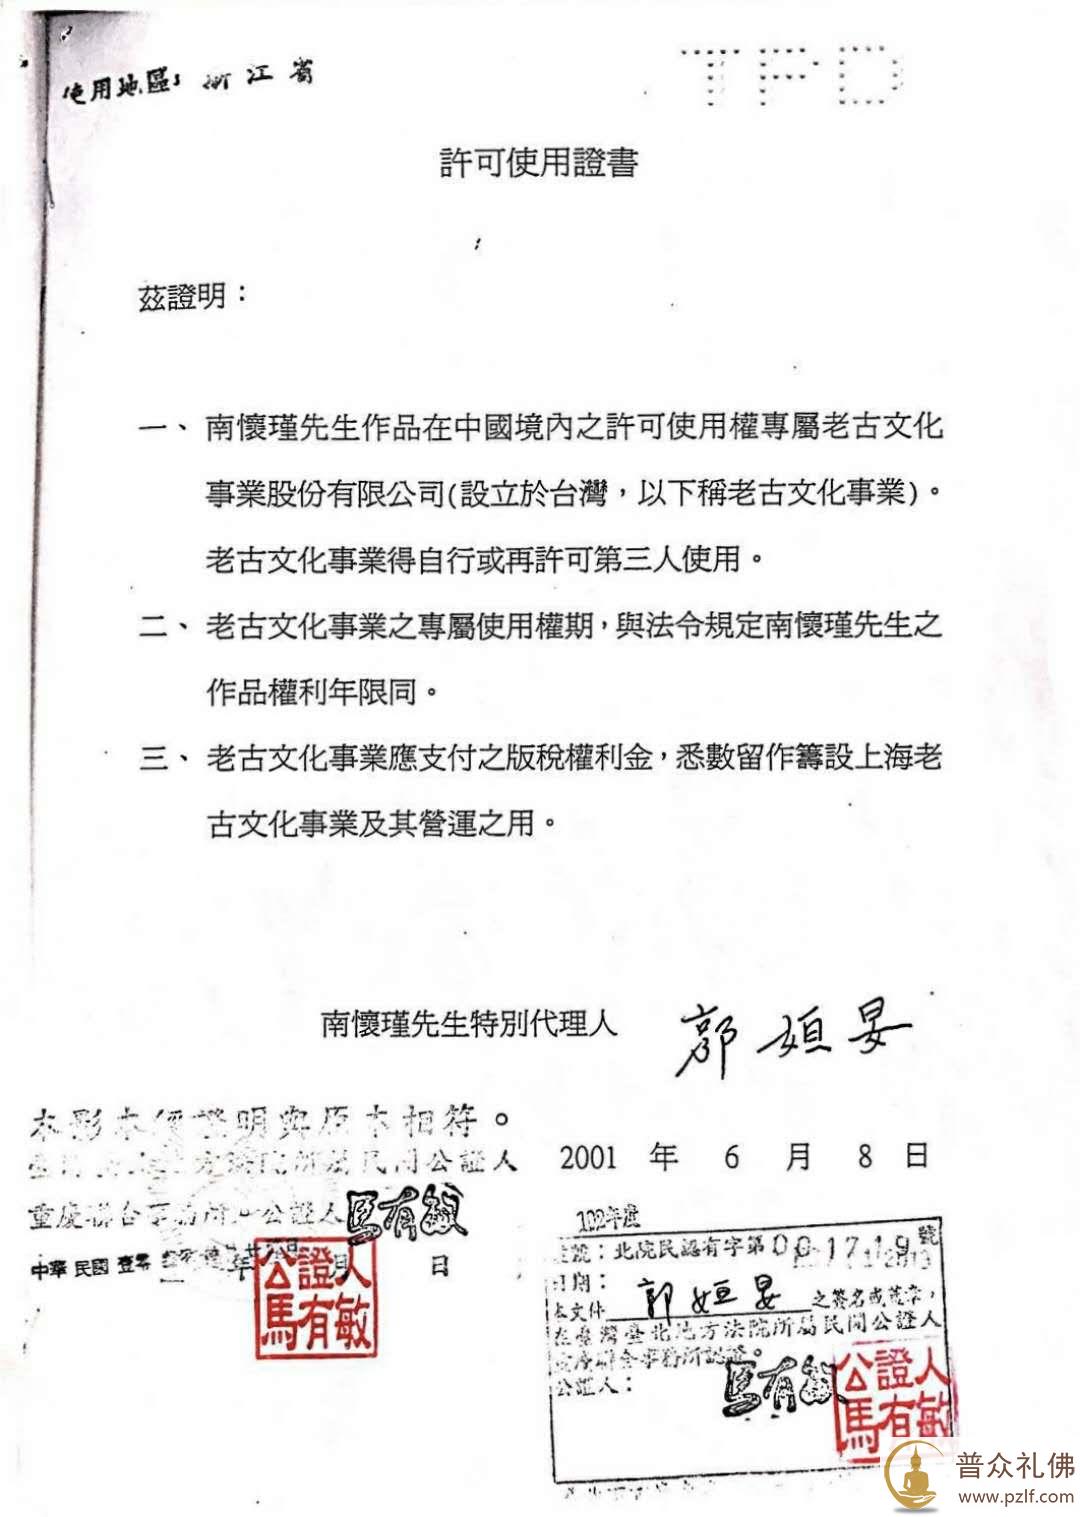 再读上海高院南怀瑾著作权判决书